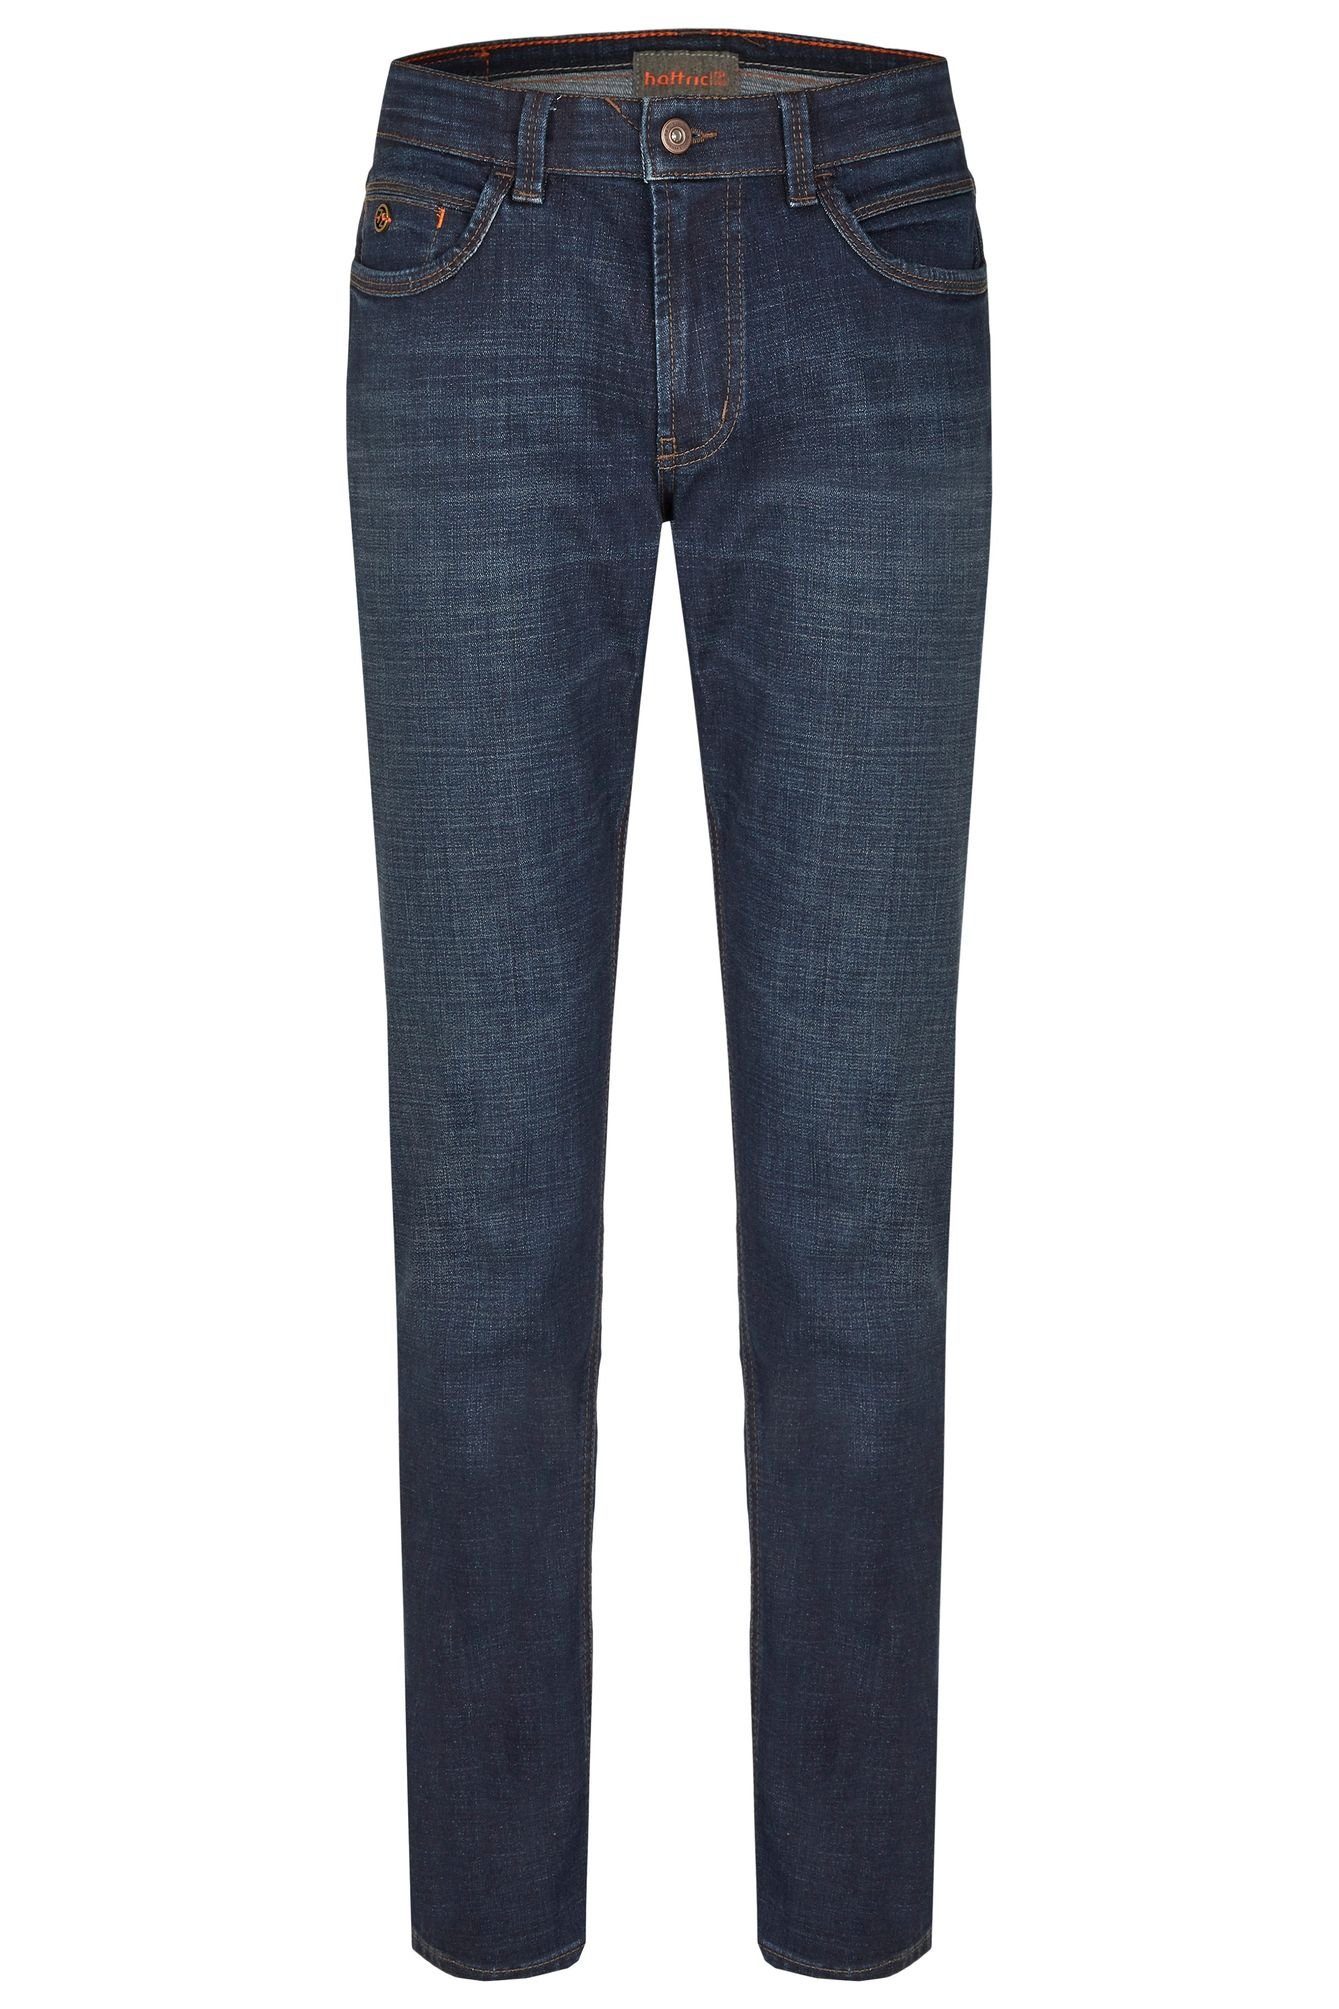 Hattric 5-Pocket-Jeans 688495-9690 dark blue (48)